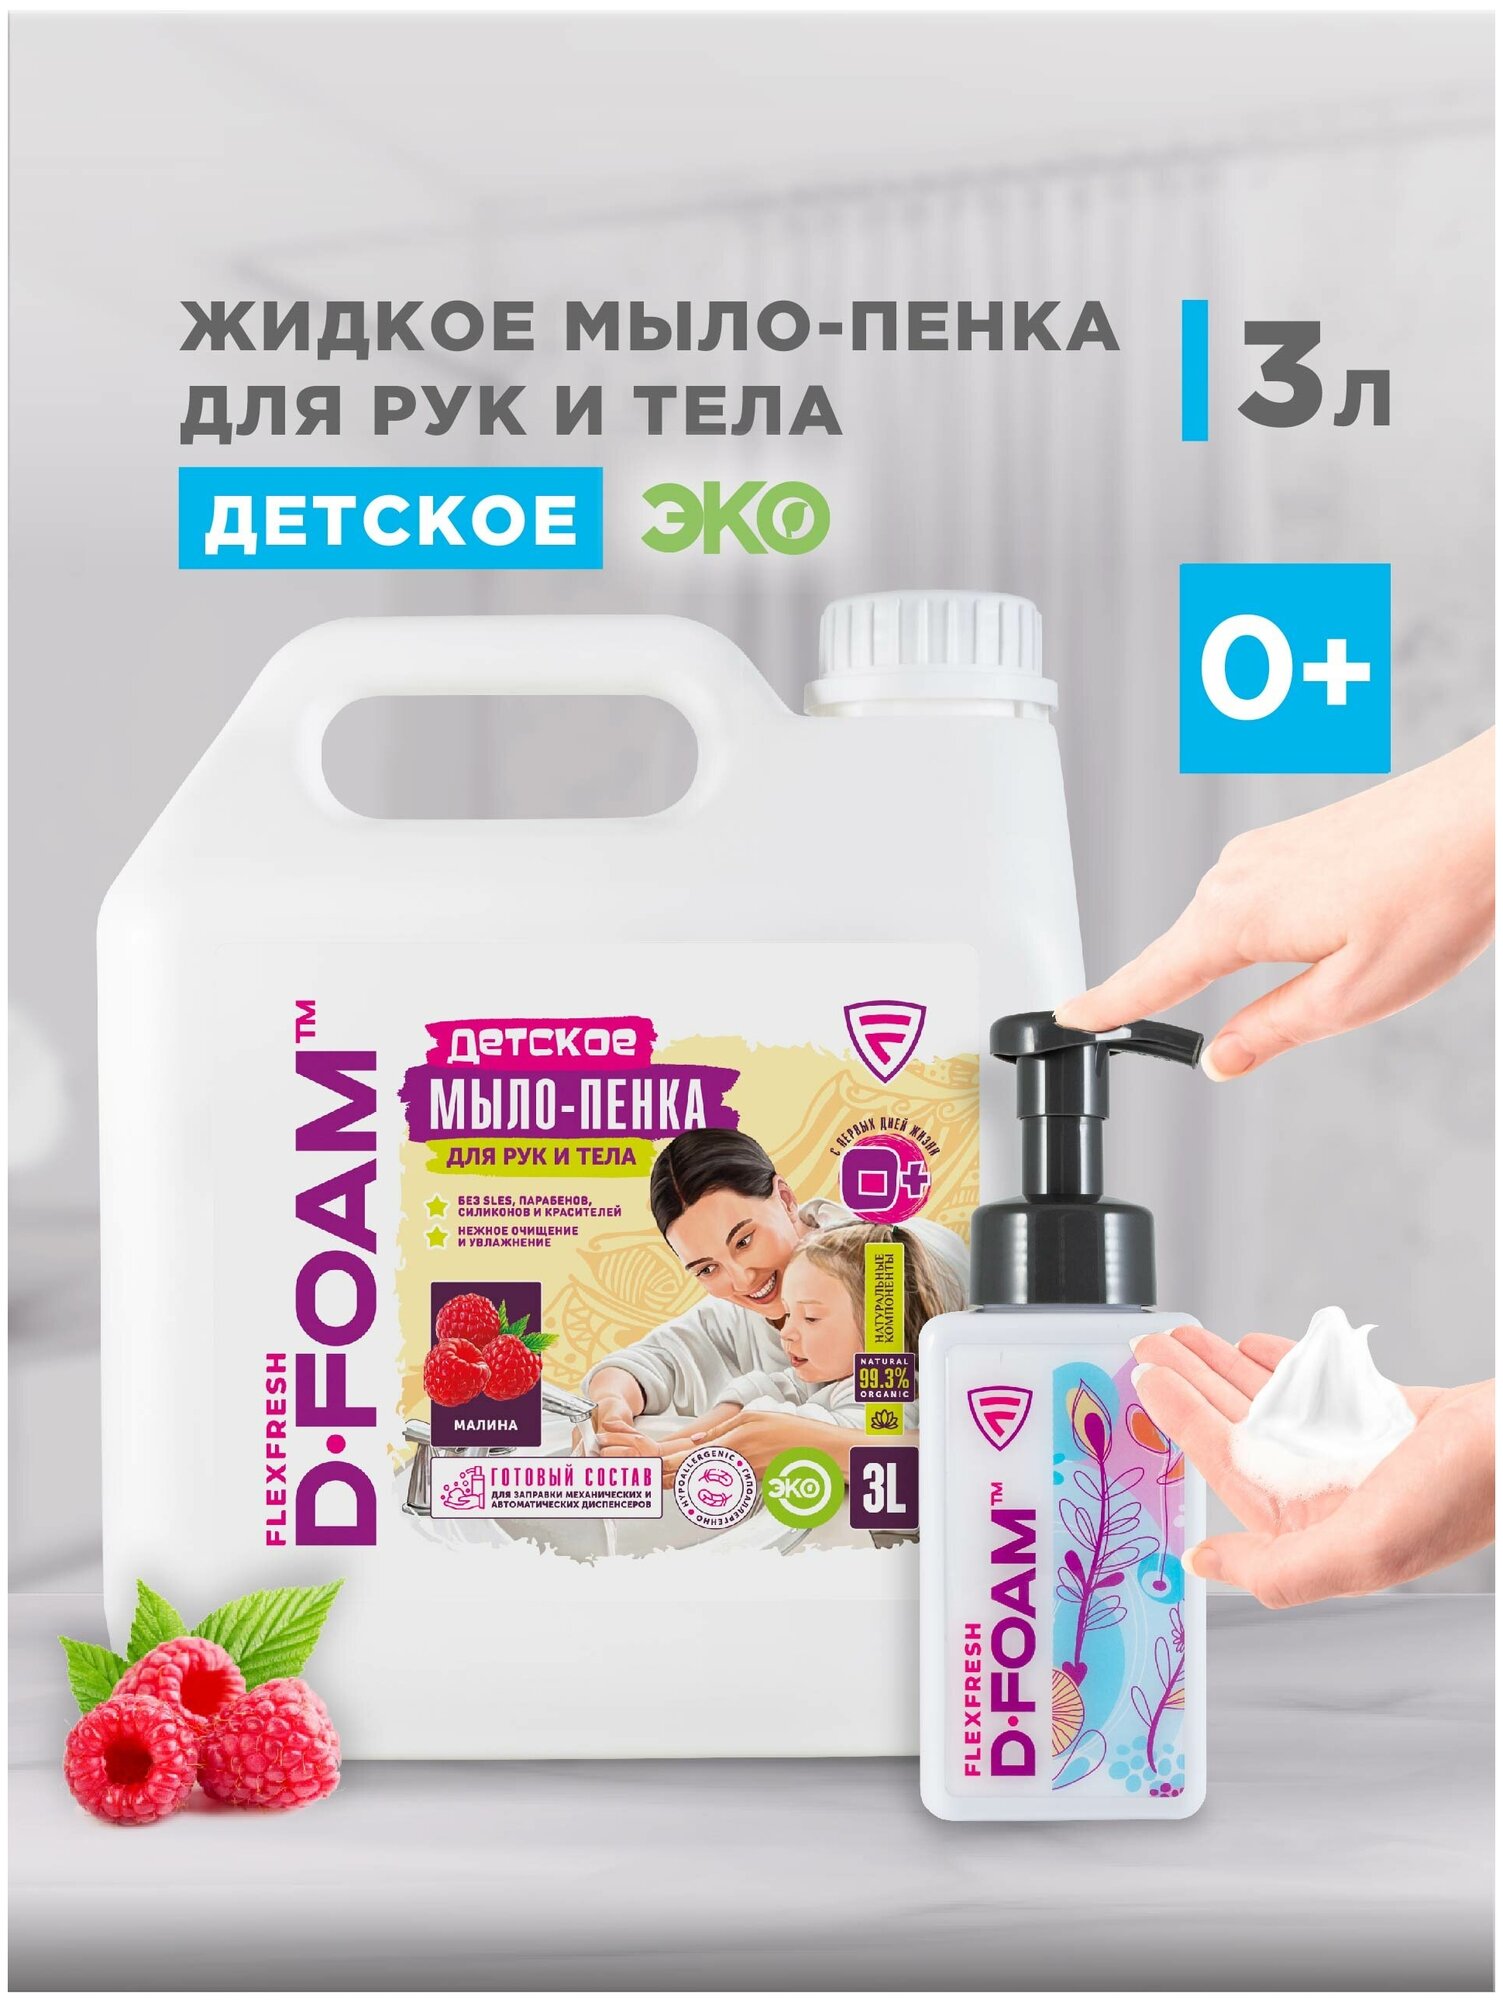 ЭКО жидкое мыло пенка FlexFresh для рук и тела детская Flexfresh "D-FOAM" 3 литра с дозатором гипоаллергенное аромат Малина